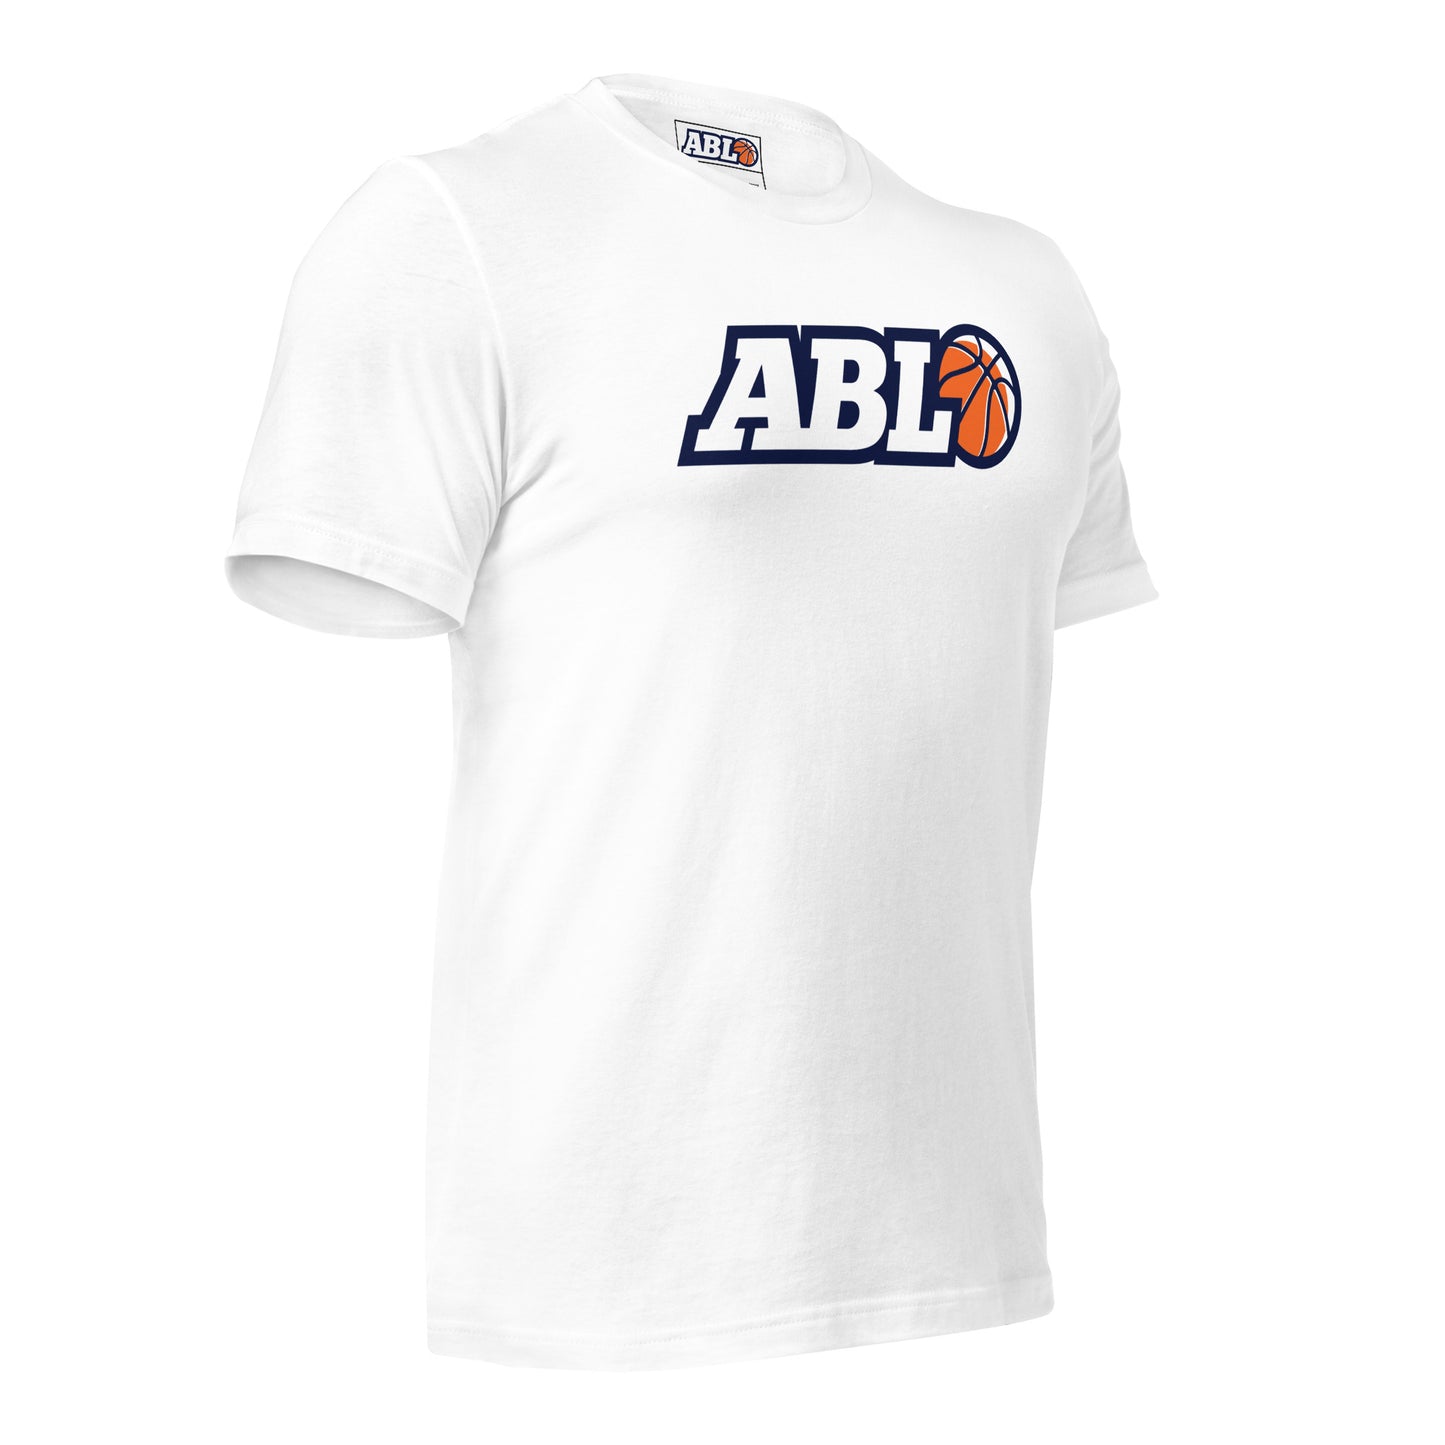 ABL Unisex t-shirt